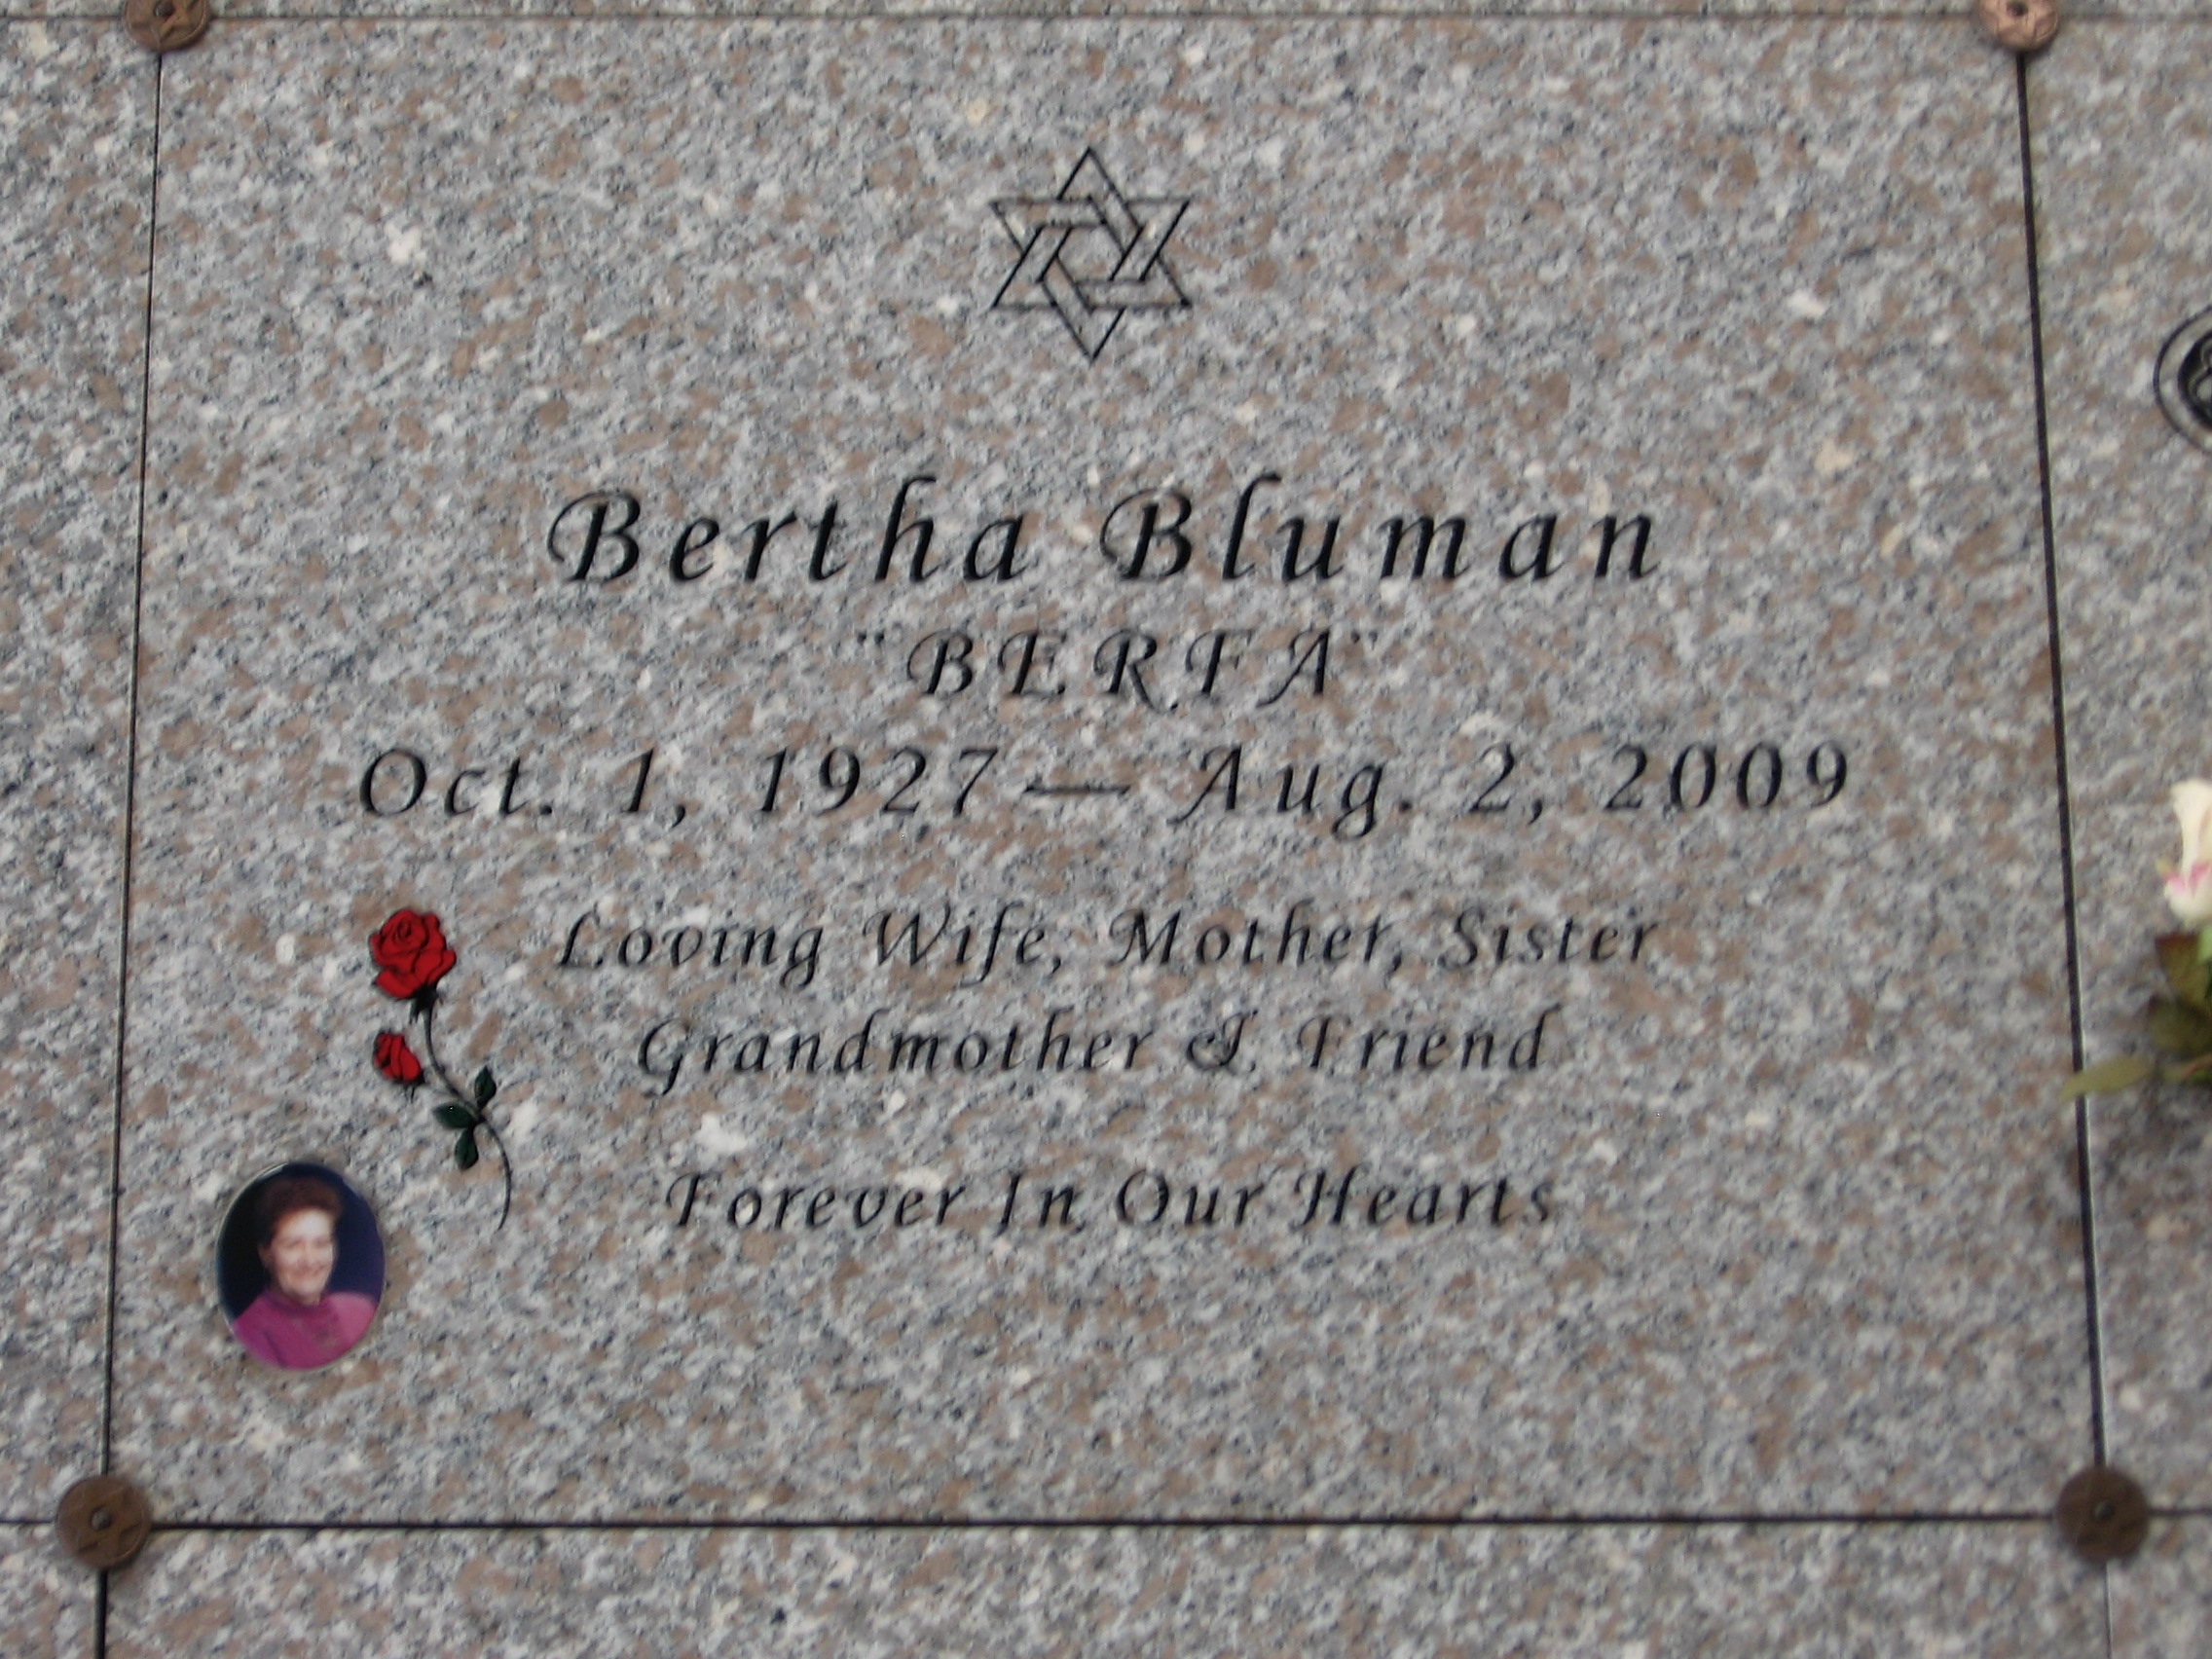 Bertha "Berfa" Bluman